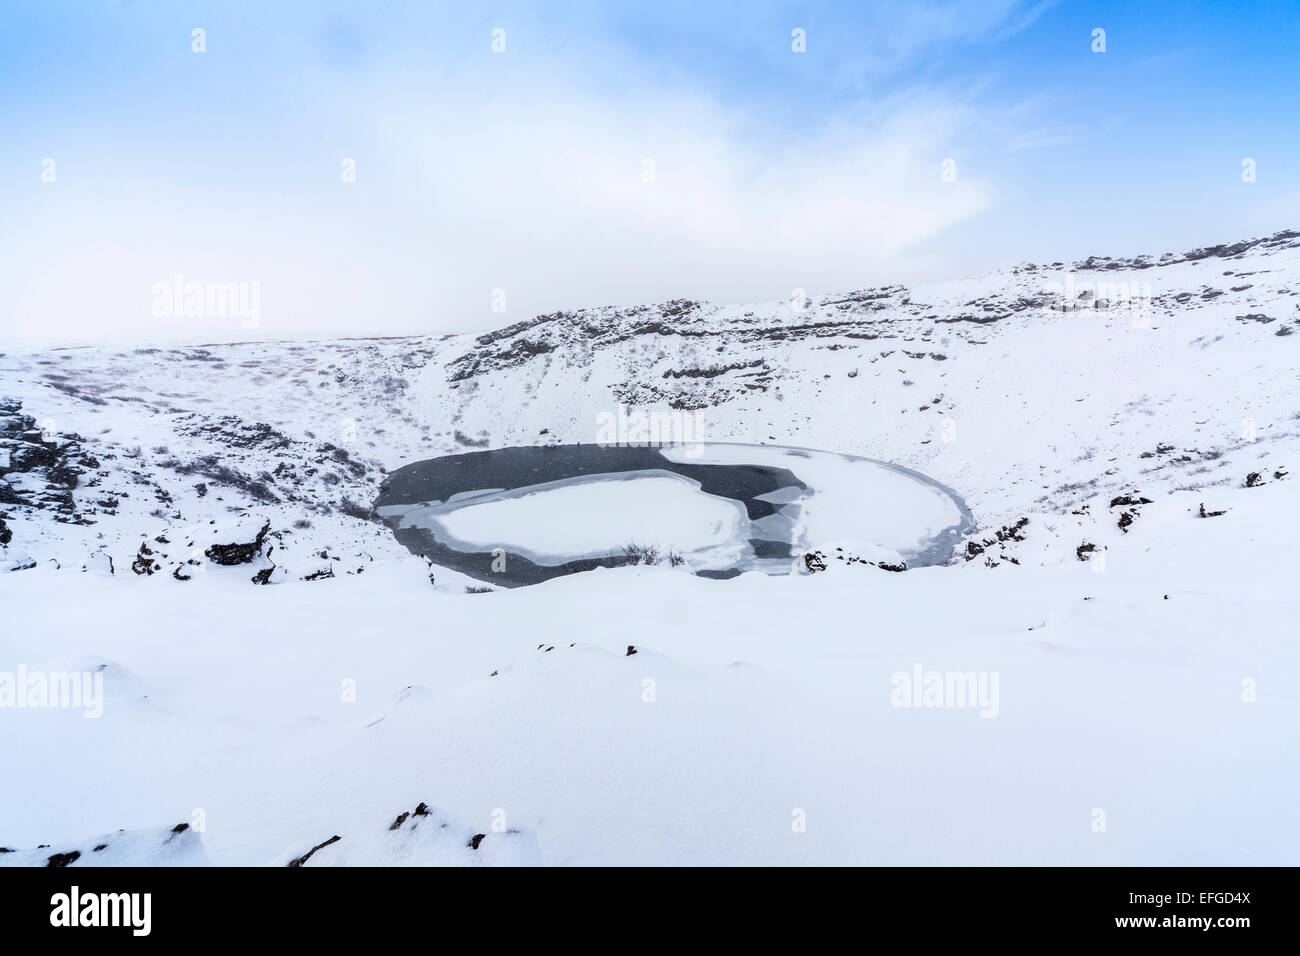 La caldera rocciose di Kerid (o) Kerith vulcano e congelato il cratere del lago in Islanda, una popolare destinazione turistica in inverno durante una nevicata Foto Stock